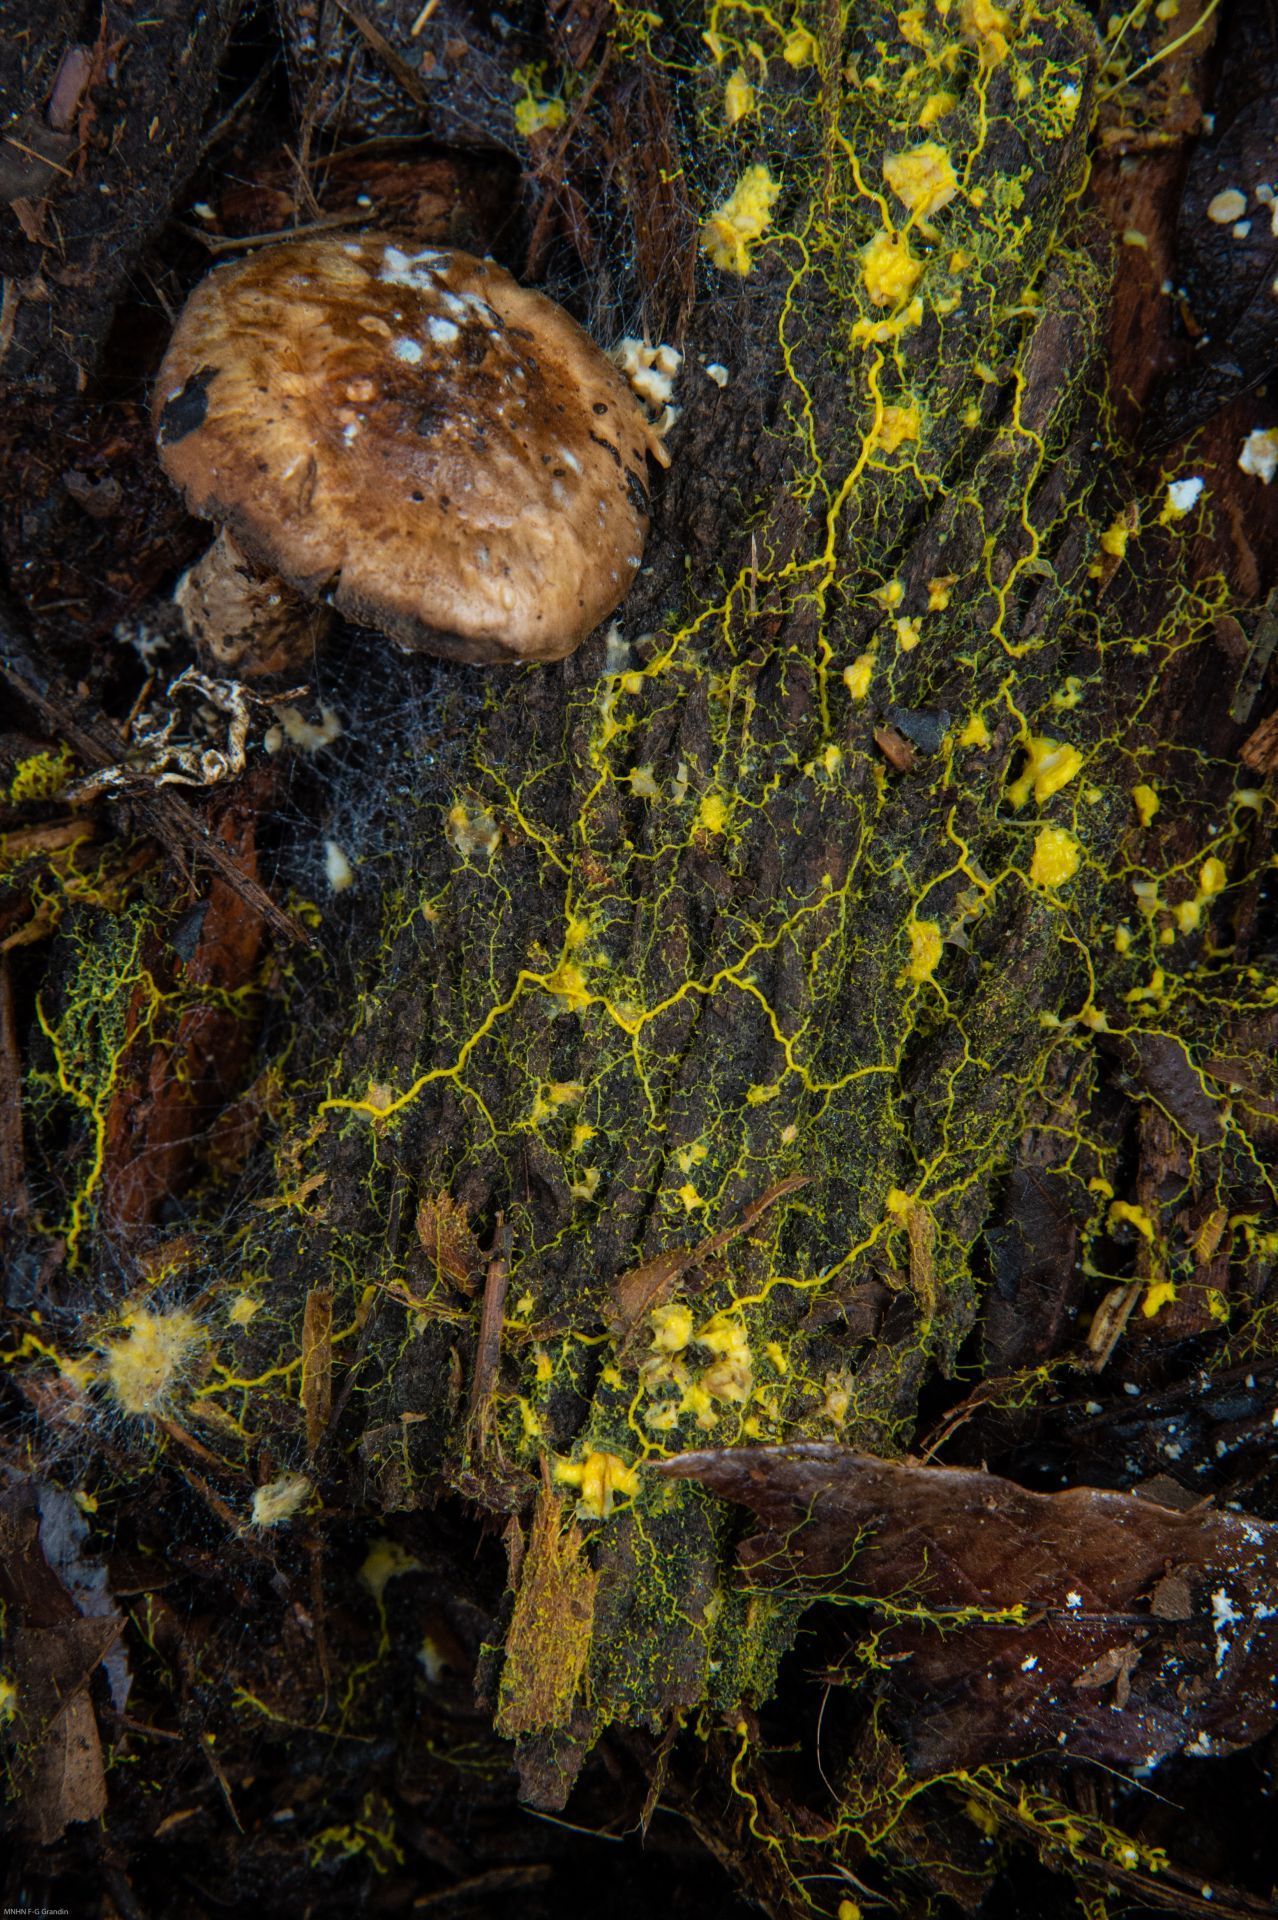 Der gelbe Einzeller ernährt sich von Pilzen. Diese geben chemische Stoffe ab, die der Blob aufspürt.